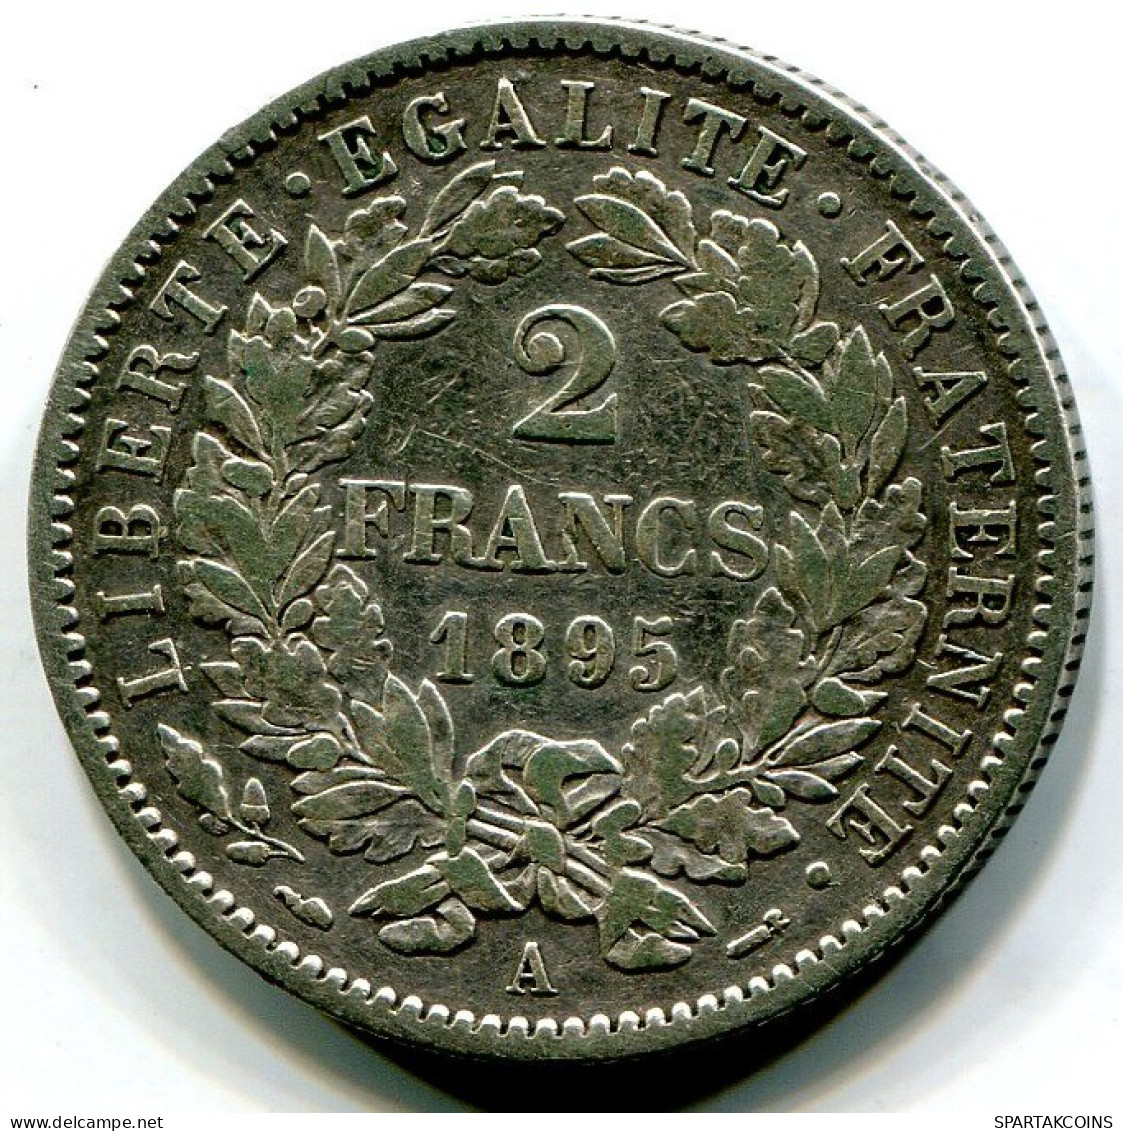 2 FRANCS 1895 A FRANCIA FRANCE Moneda XF #W10518.18.E.A - 2 Francs